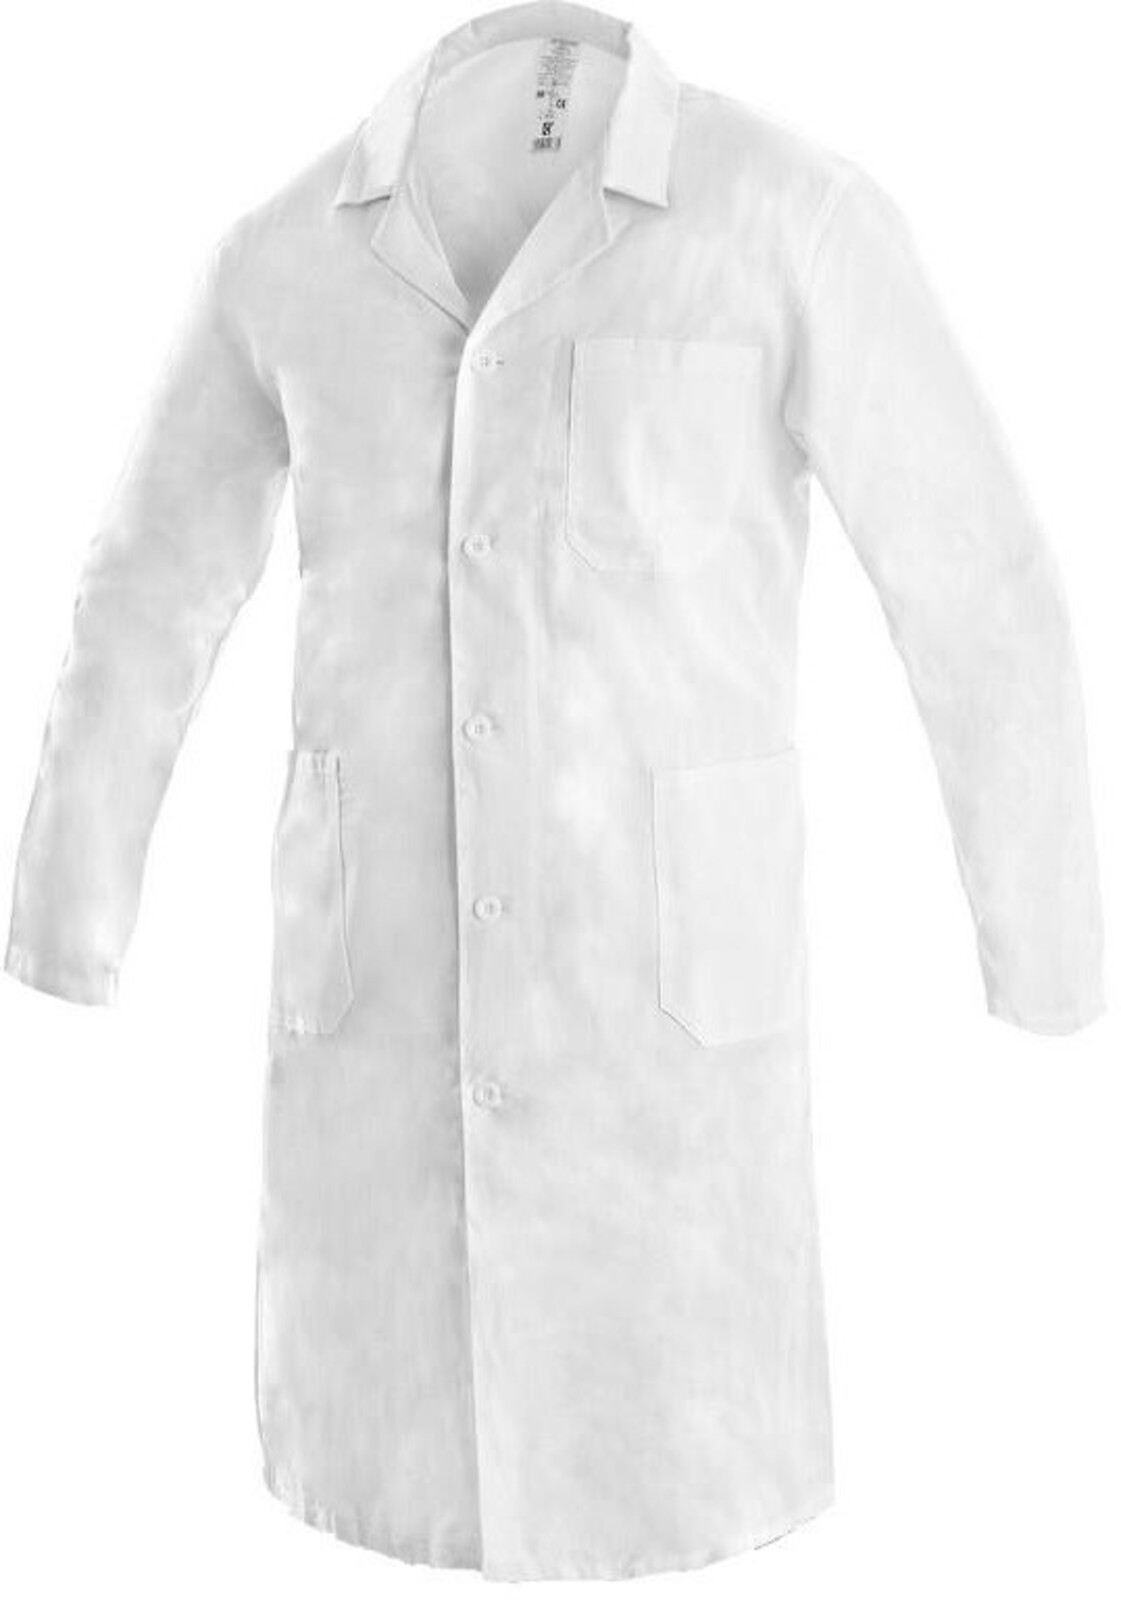 Pánsky plášť CXS Adam - veľkosť: 64, farba: biela